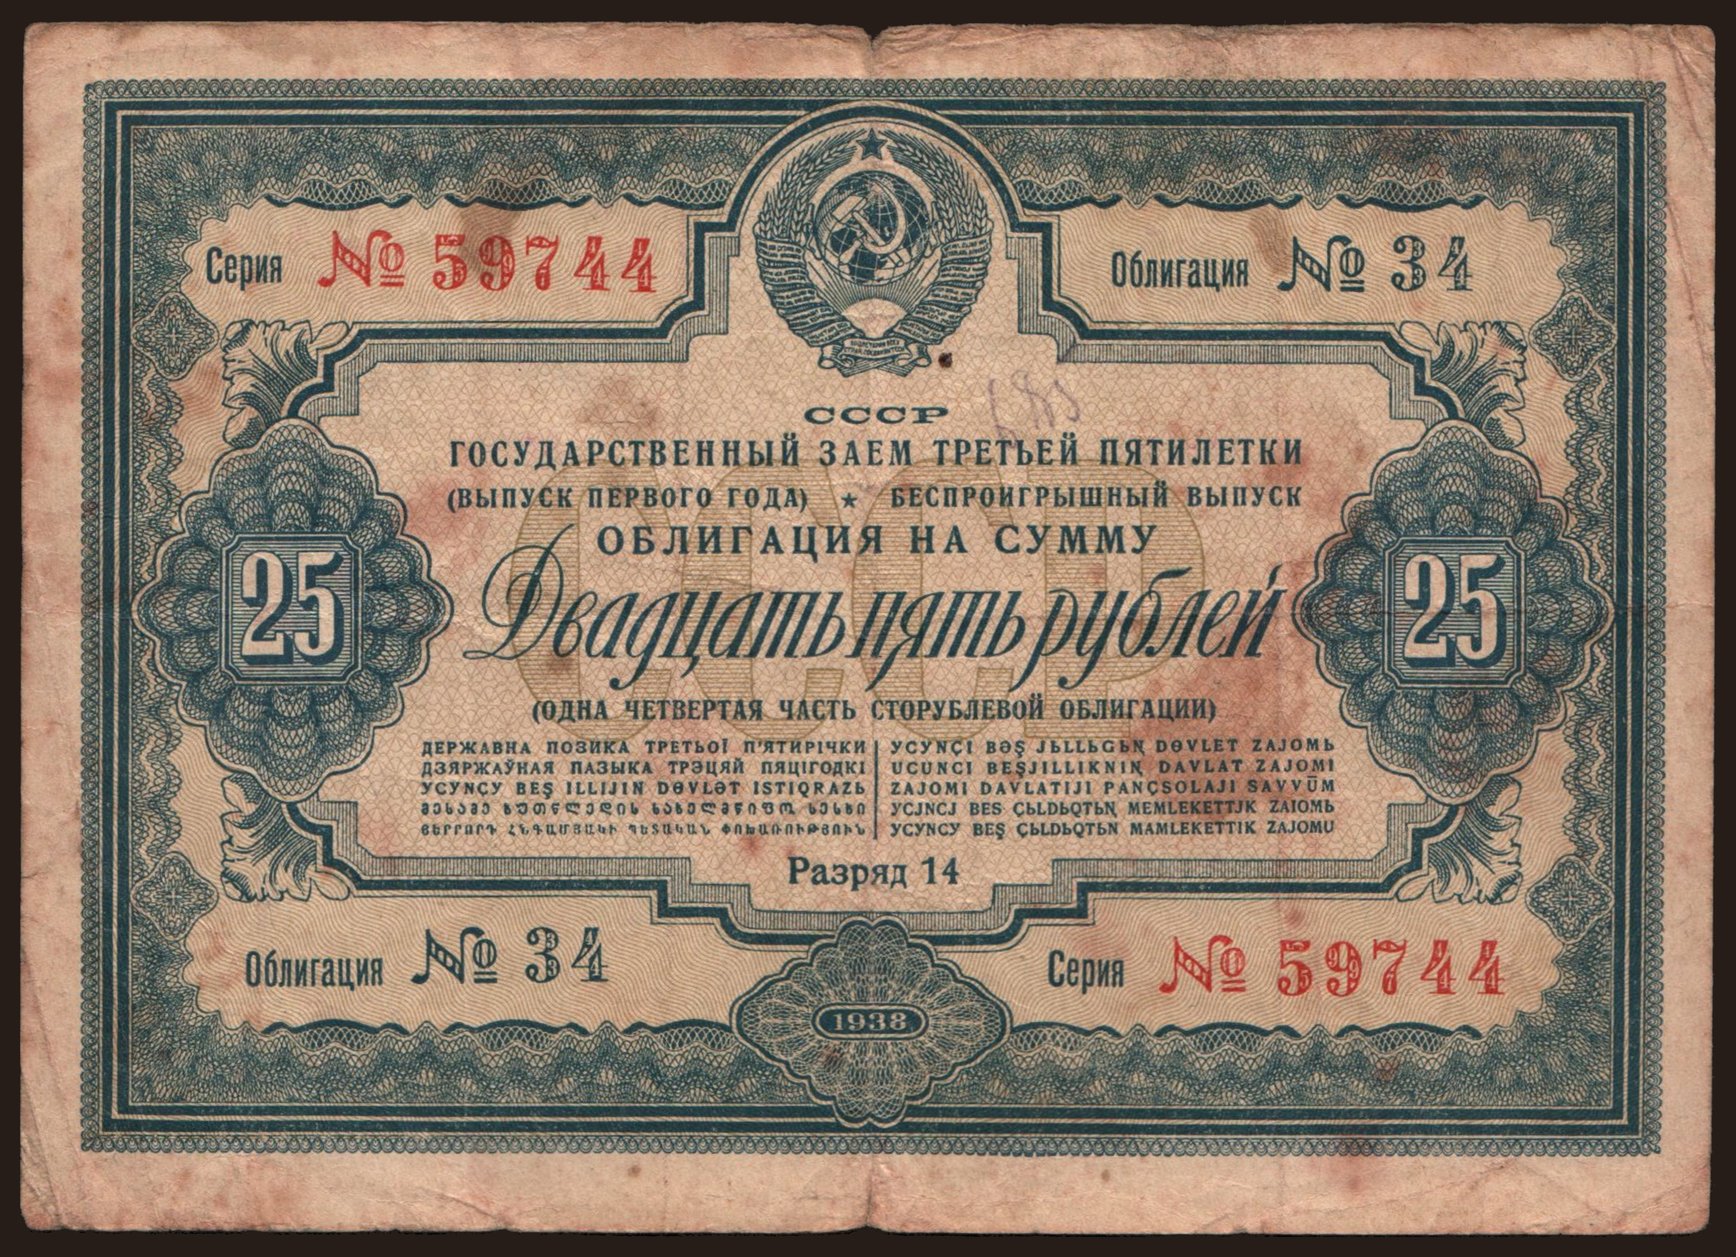 Gosudarstvennyj zaem, 25 rubel, 1938